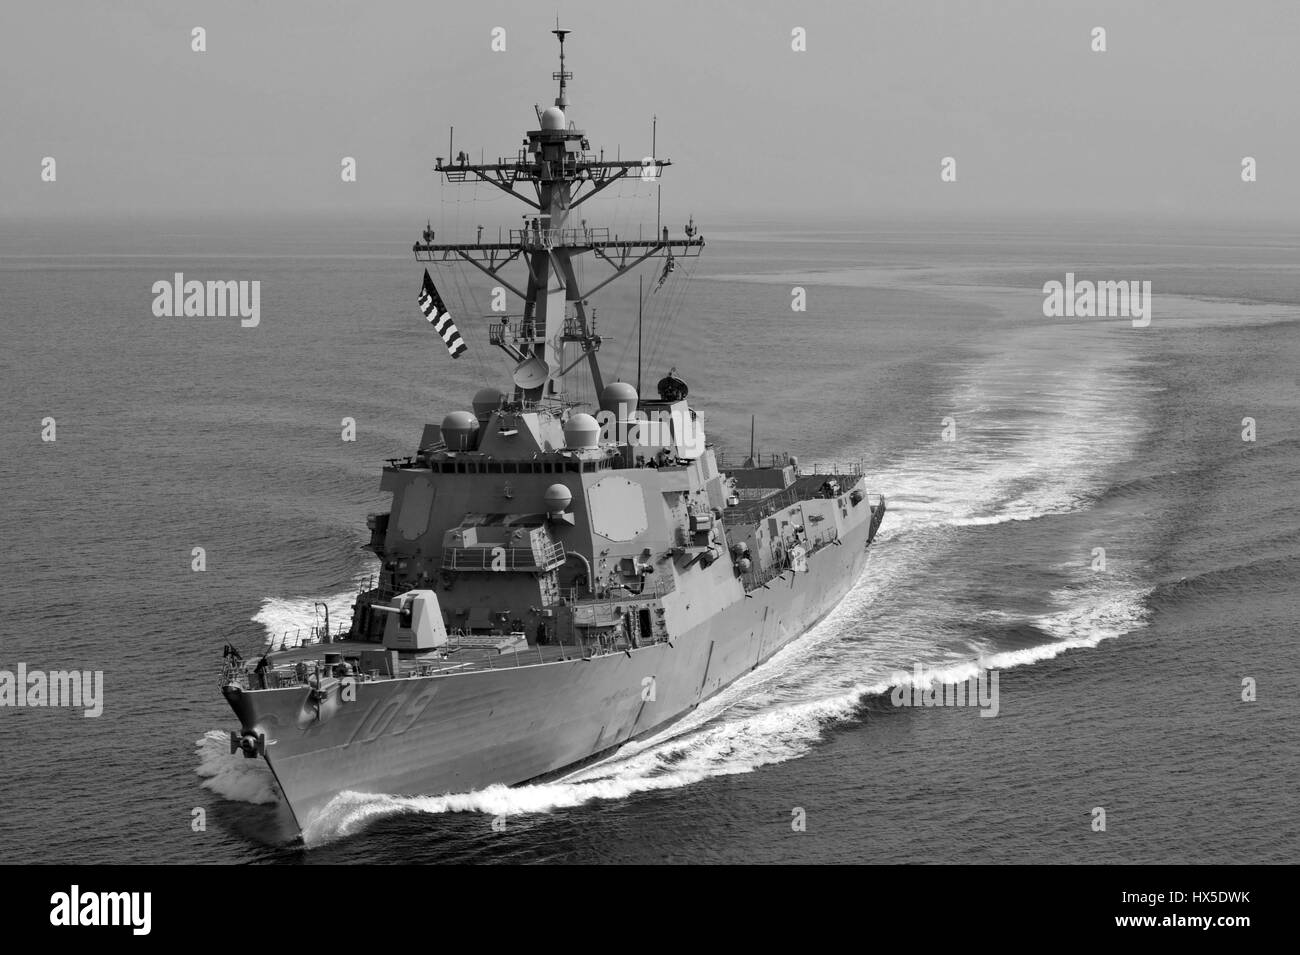 Visite-missile destroyer USS Jason Dunham (DDG 109) sull'acqua negli Stati Uniti Quinta Flotta od area di responsabilità, 2013. Immagine cortesia Deven B. King/US Navy. Foto Stock